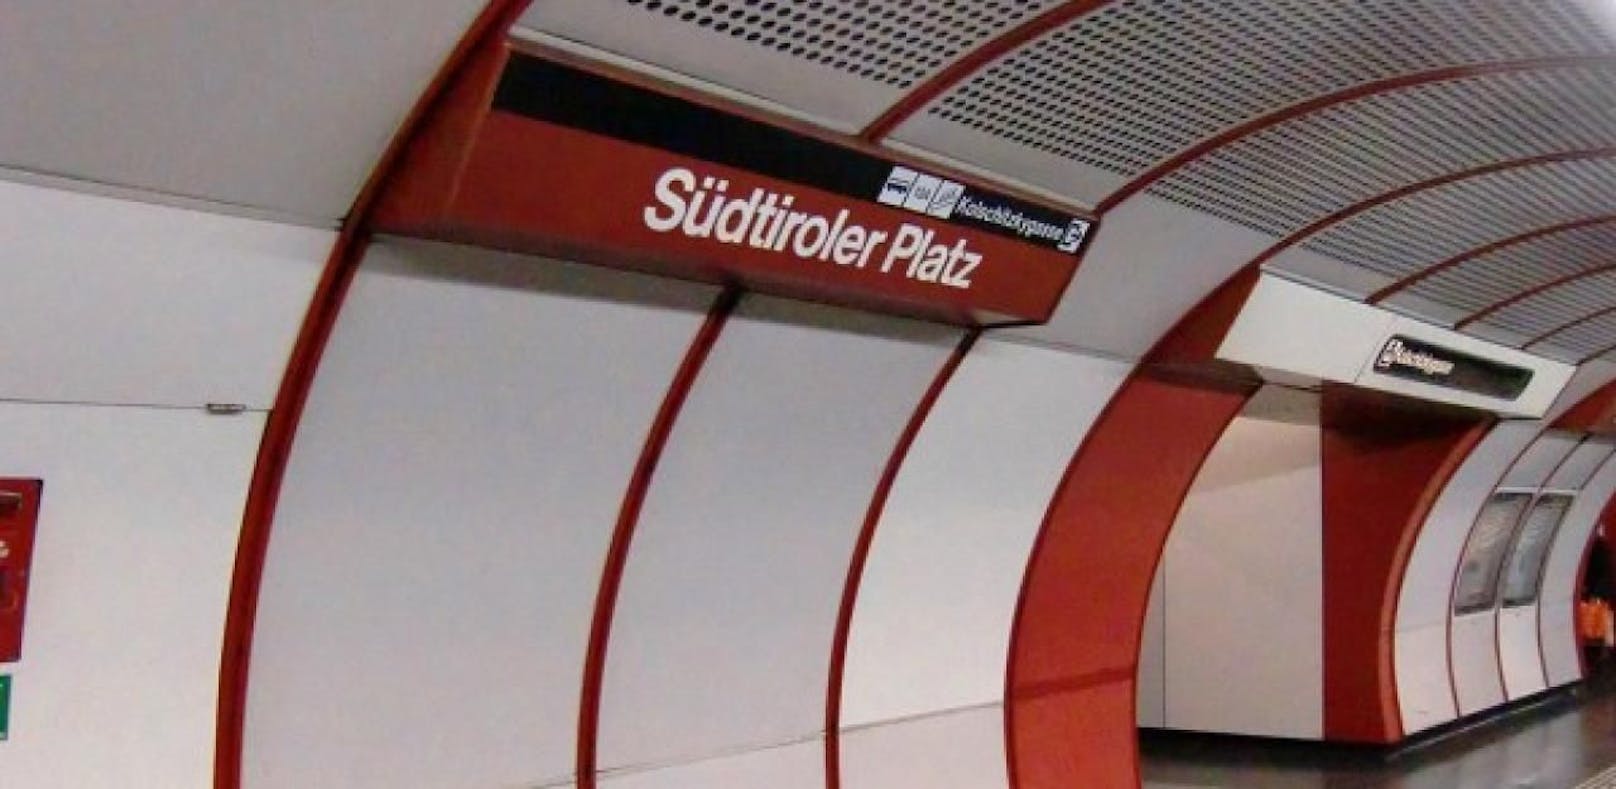 U1 Südtiroler Platz: Am Abgang in die Station urinierte der Mann, dann rastete er aus